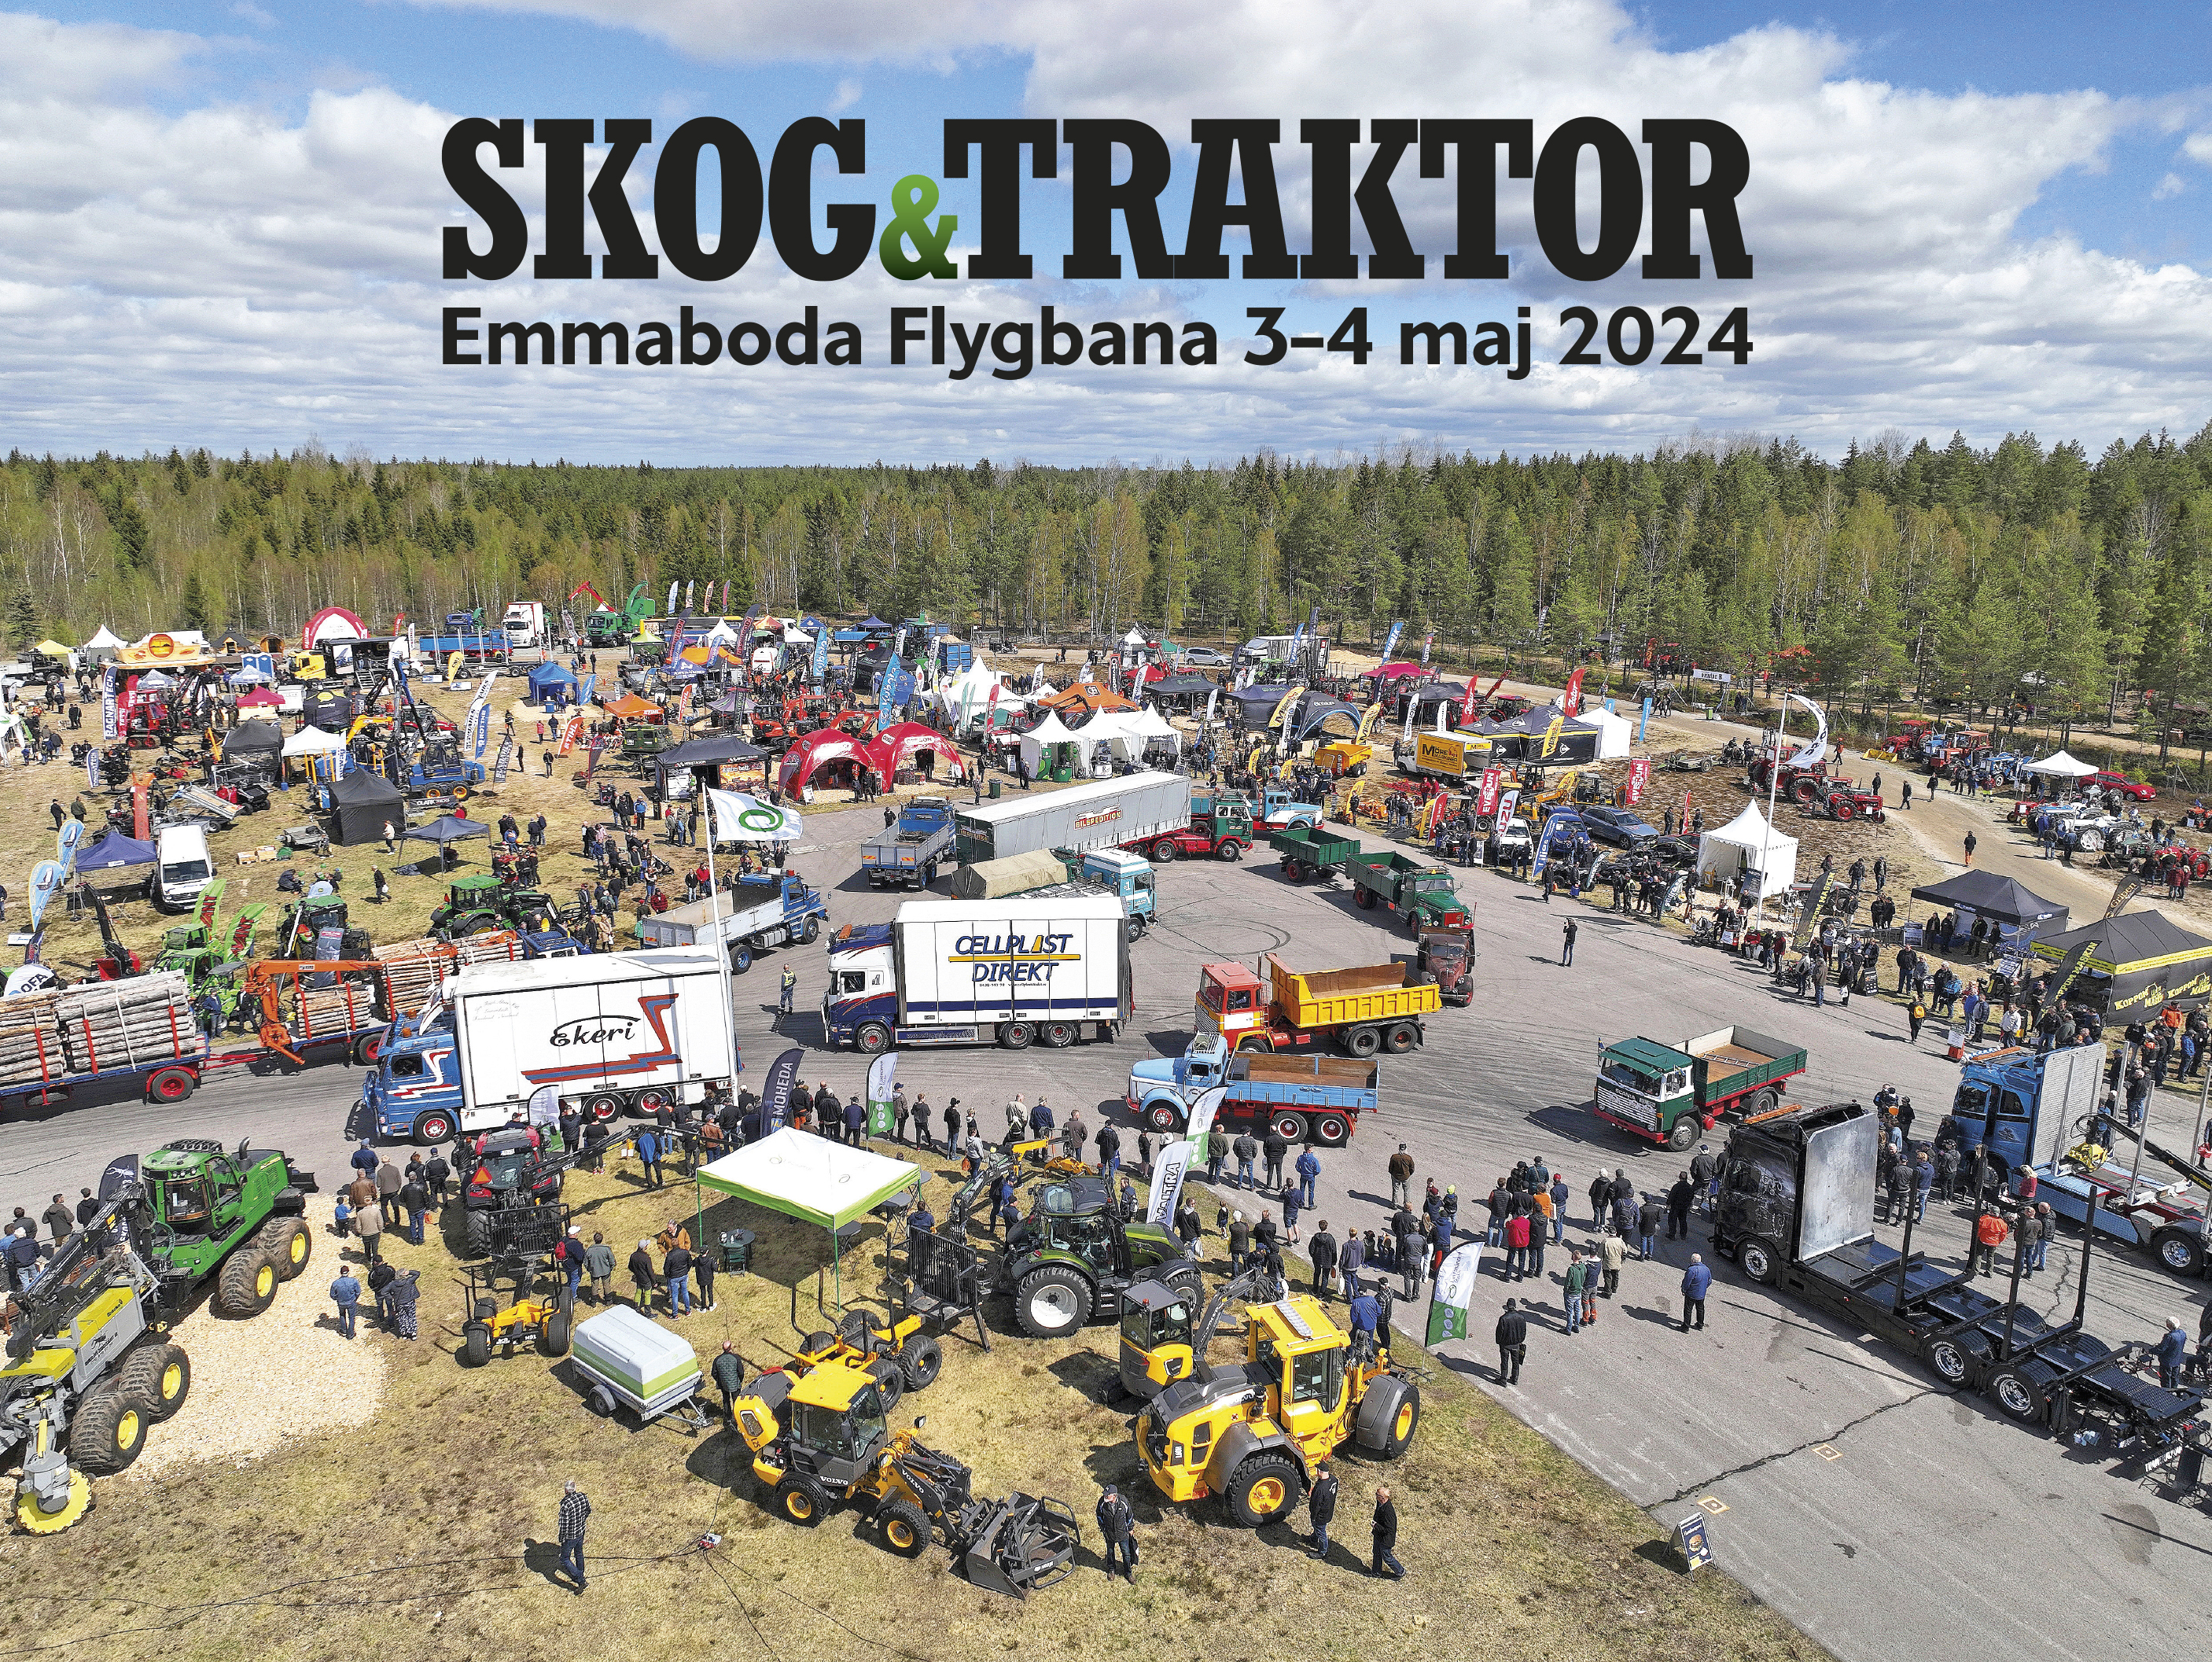 Skog och Traktor, 3-4 maj 2024, Emmaboda